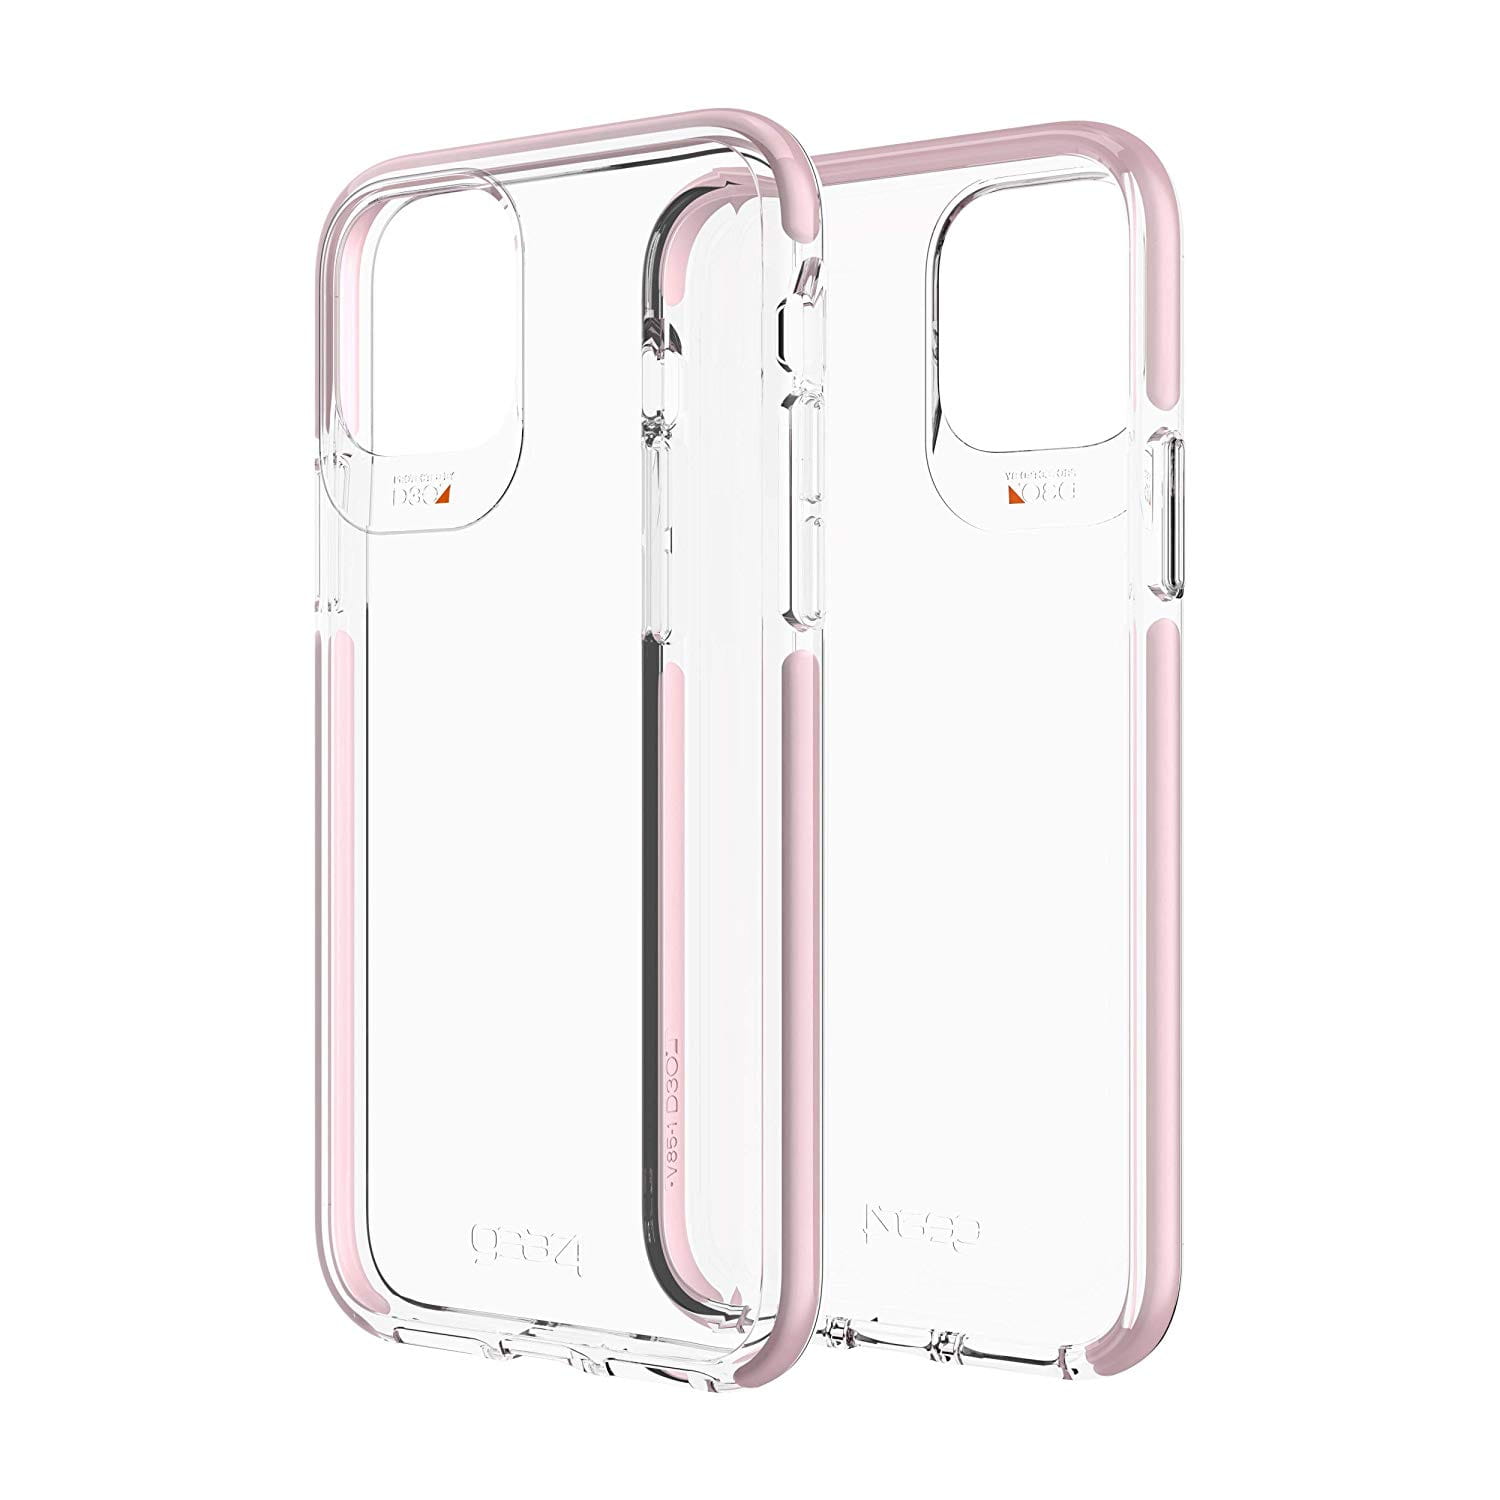 Schutzhülle Gear4 aus der Serie Piccadilly für iPhone 11 Pro, rosa.